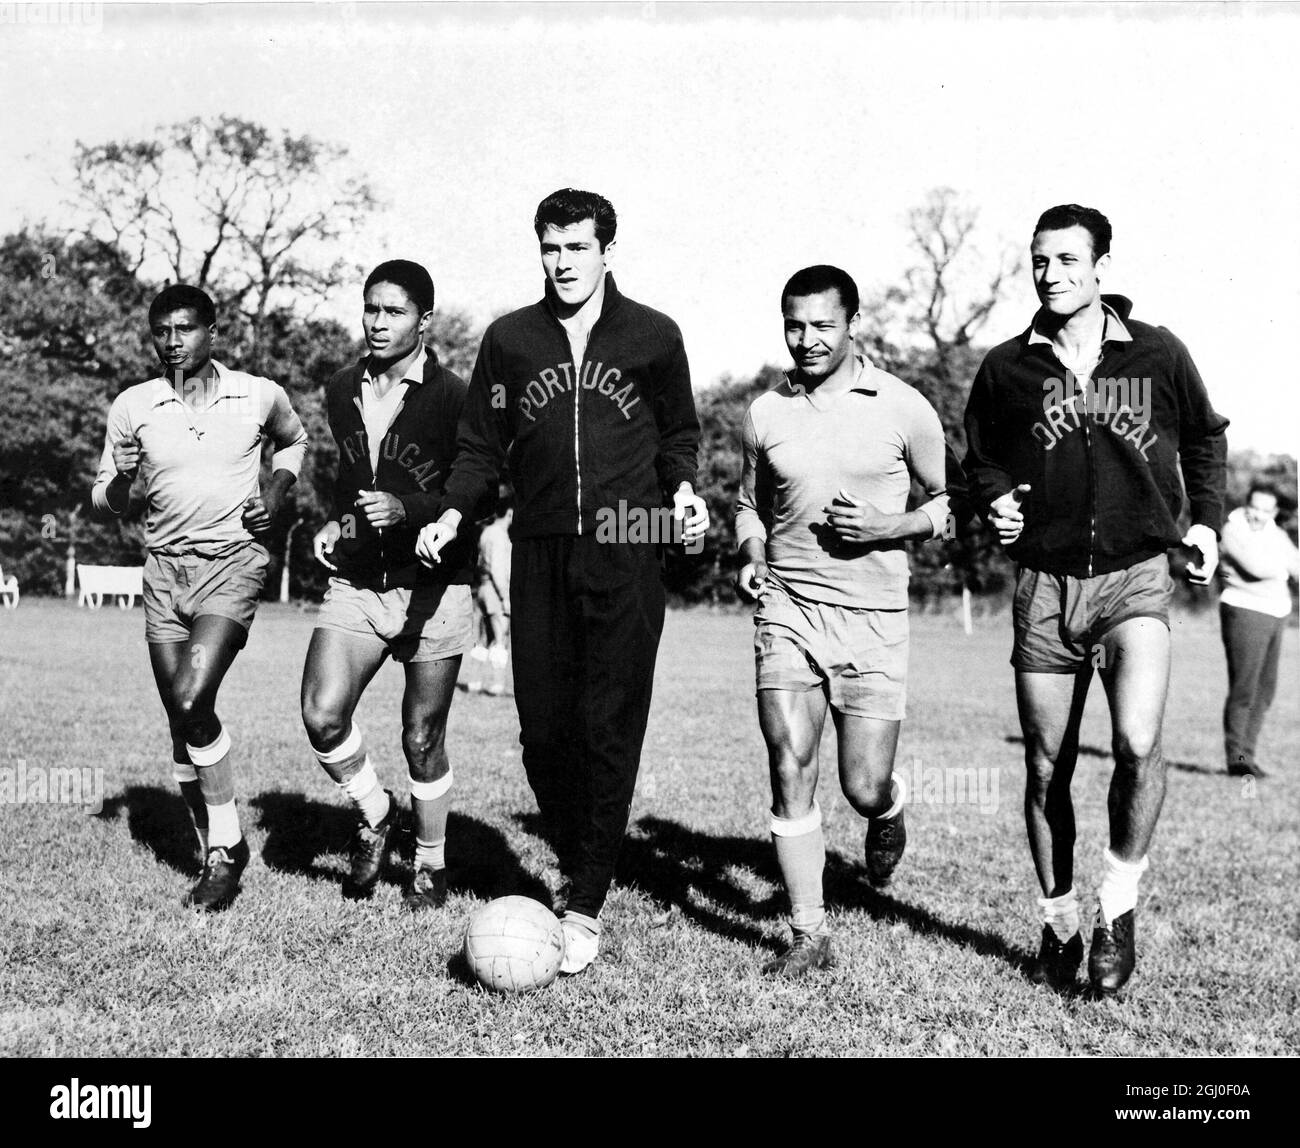 La linea diretta del Portogallo (da sinistra a destra) Yuaca, Eusebio, Aguas, Coluna e Cavena corrono con la palla a Greenford dove si allenavano per la loro partita di Coppa del mondo contro l'Inghilterra a Wembley. 23 ottobre 1961. Foto Stock